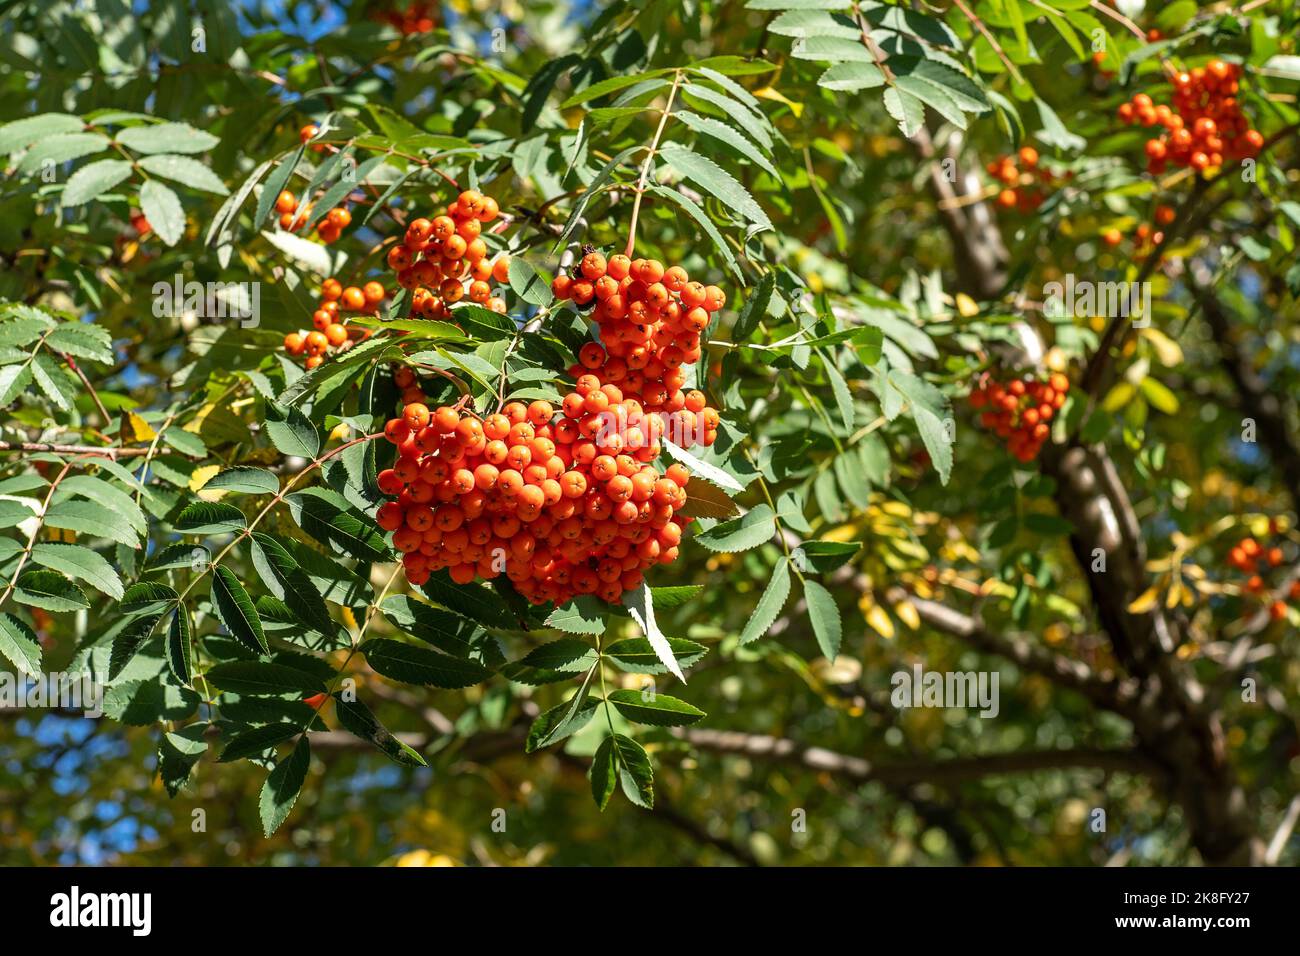 Vogelgruppen wiegen im Wind. An einem klaren, sonnigen Tag verzweigt sich der Rowan-Baum gegen den blauen Himmel. Natur. Ernte von roten und orangen Beeren. Heilpflanze. Bergasche - Europäische Sorbus aucuparia. Stockfoto